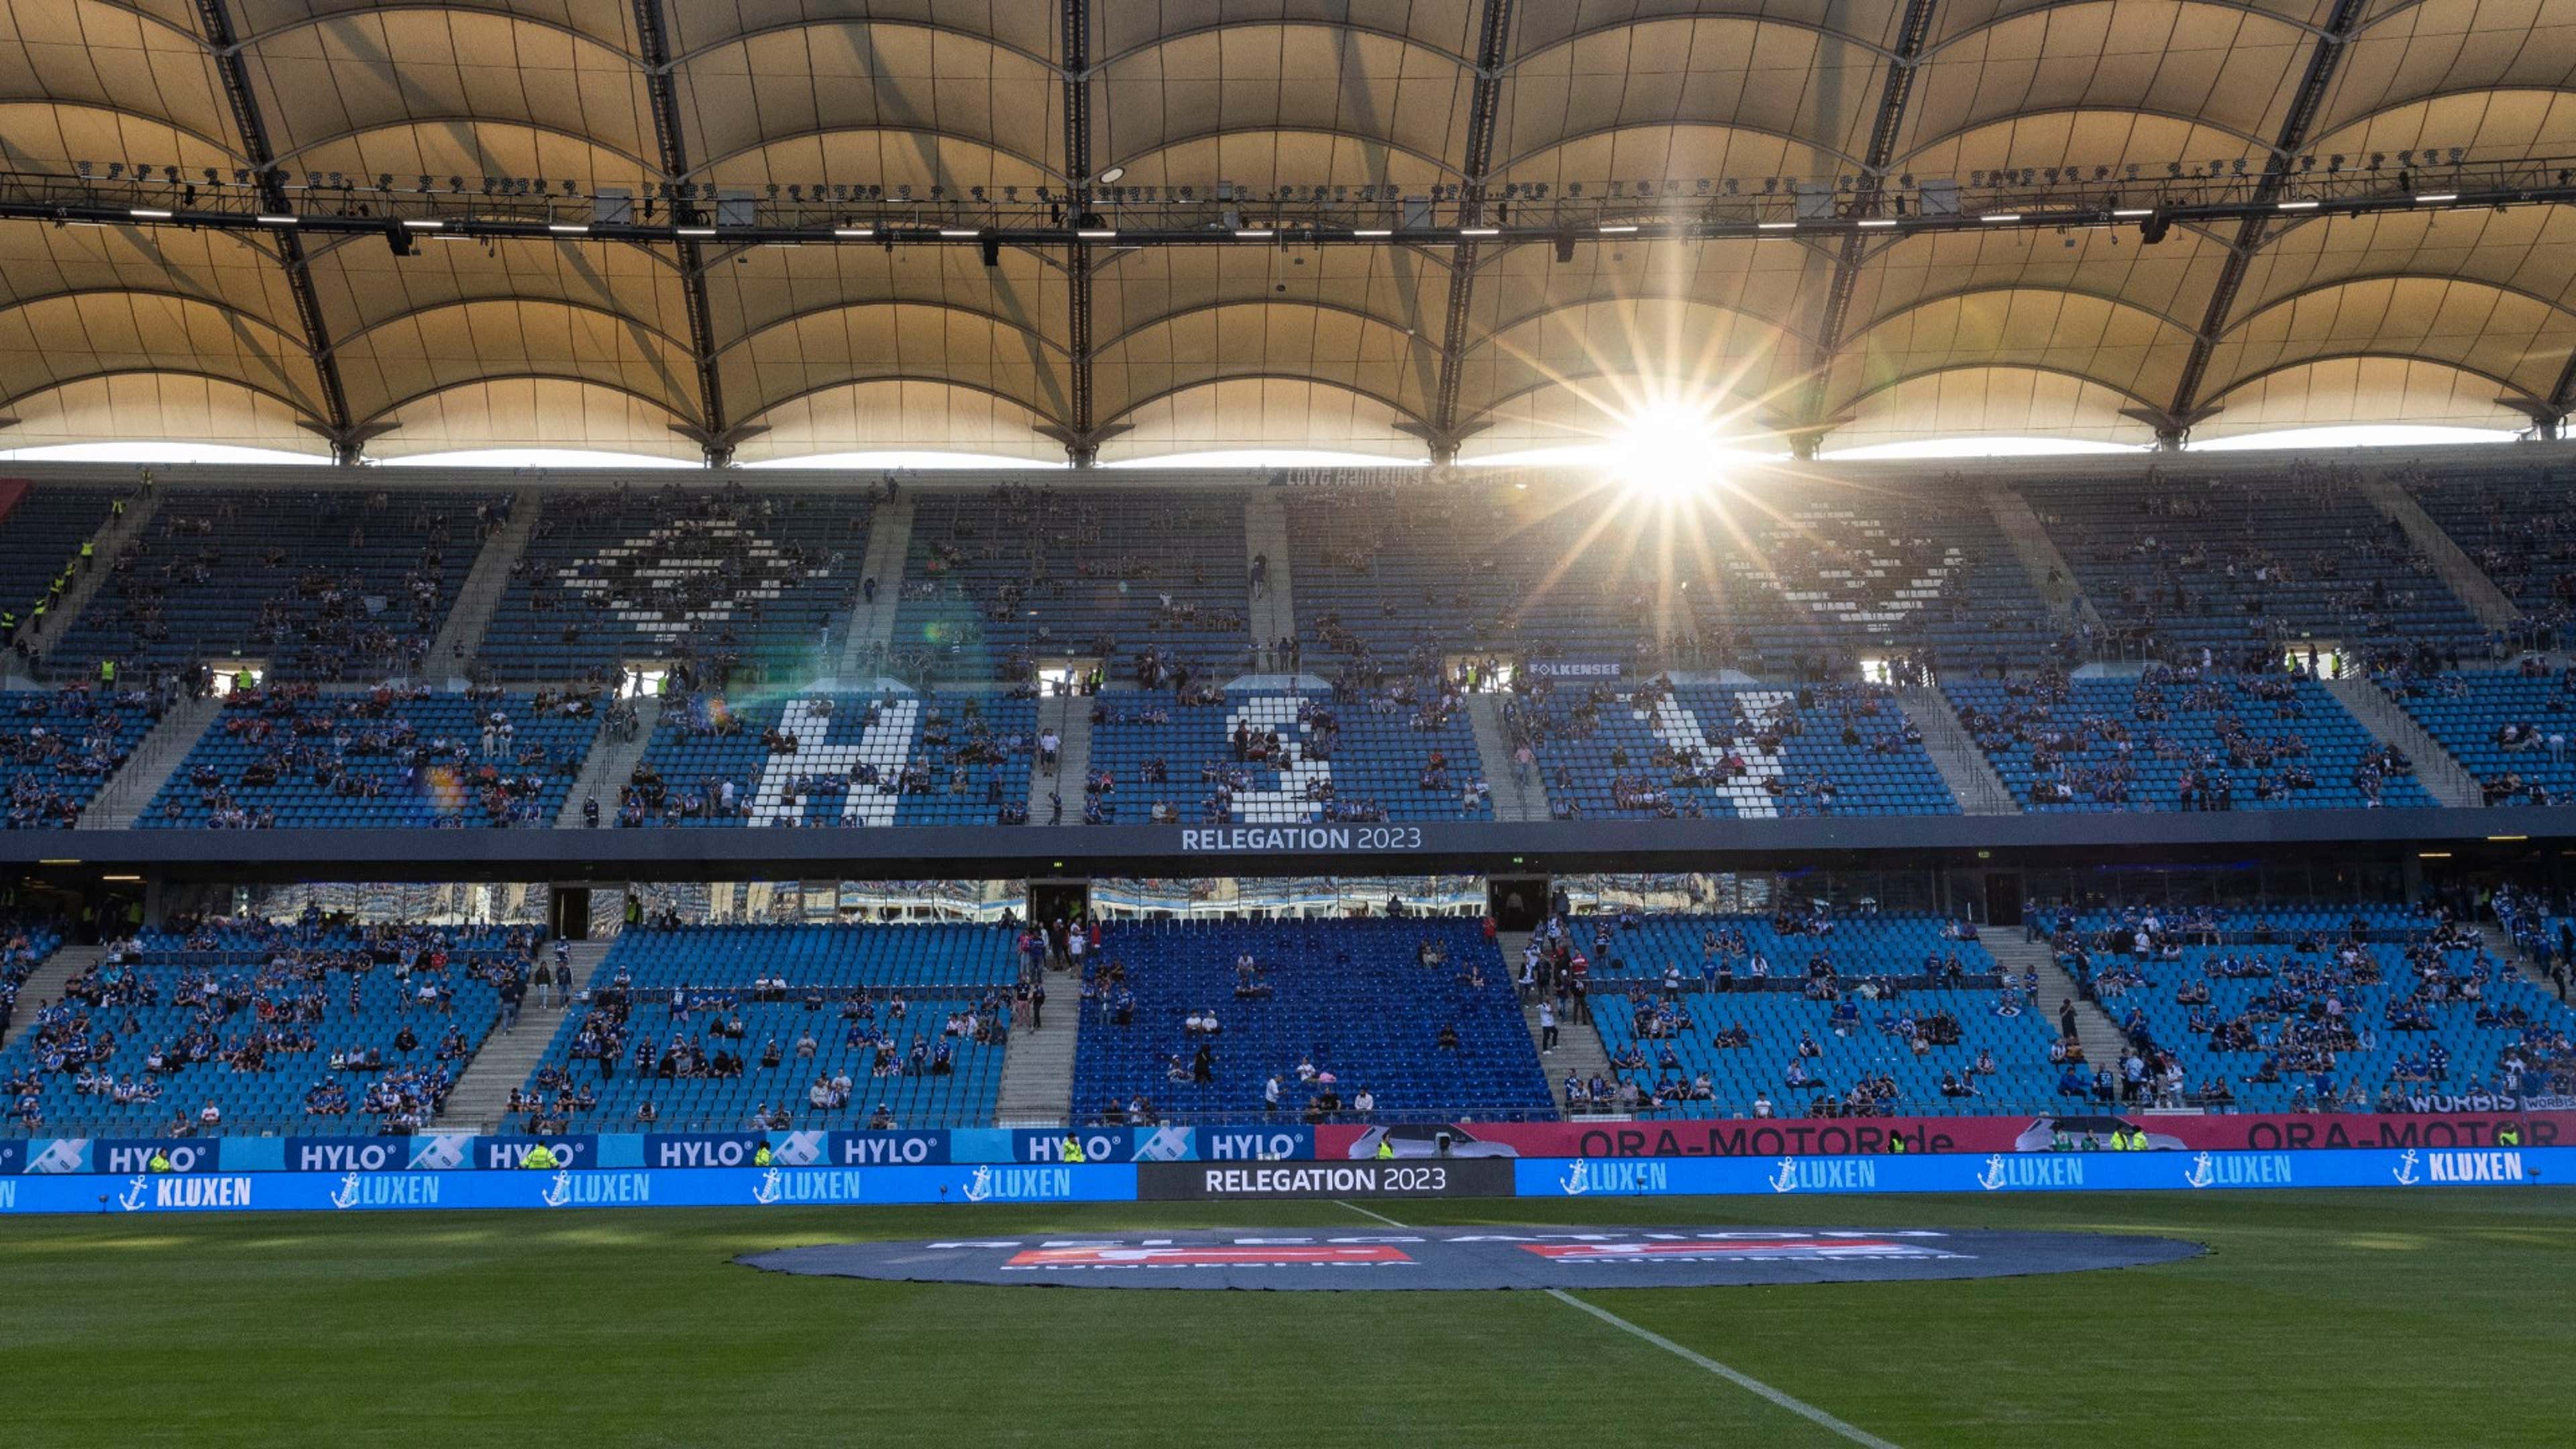 HSV News - Spiele, Aktuelles und Ergebnisse zum Hamburger SV